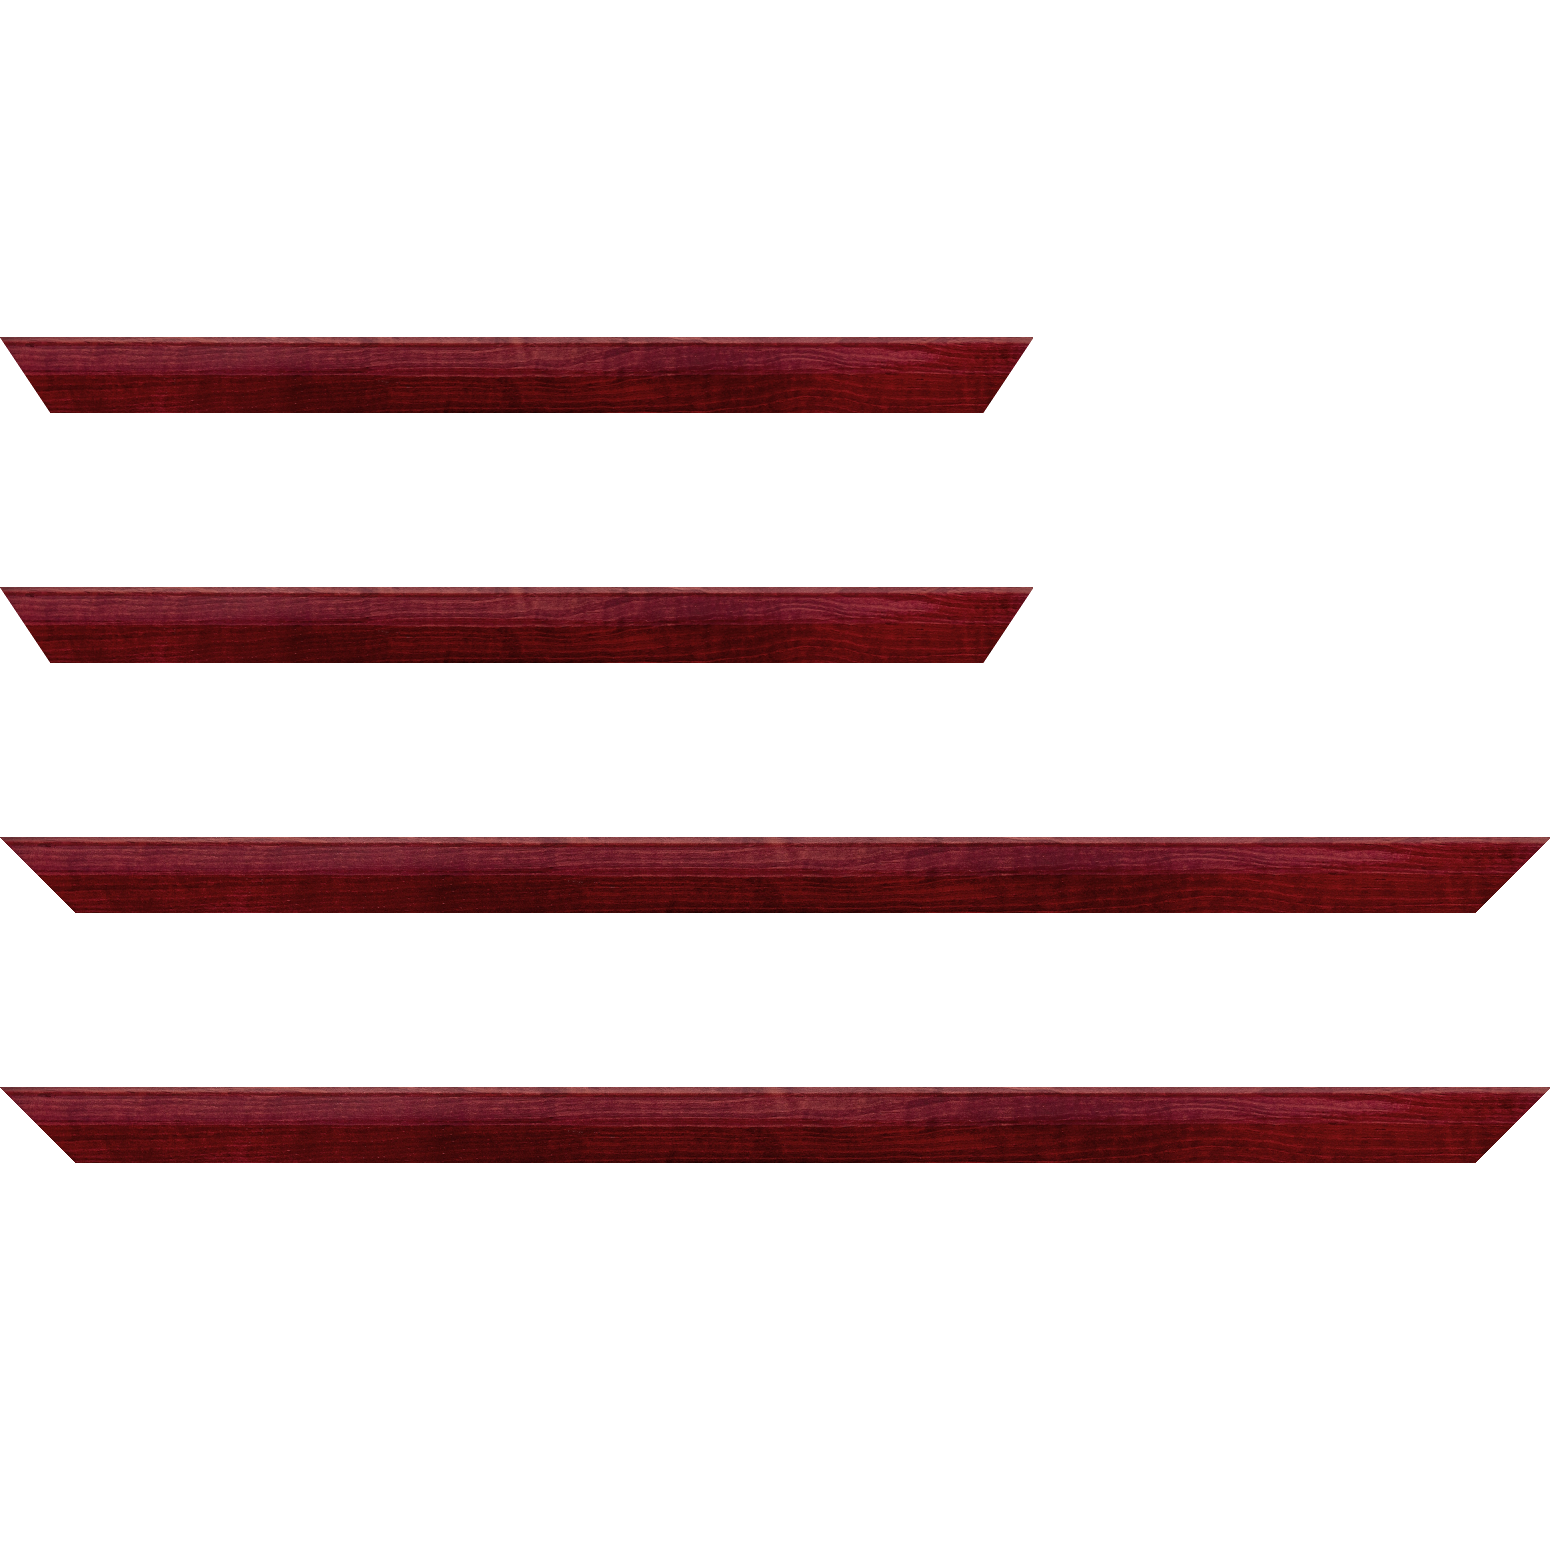 Baguette bois profil arrondi en pente plongeant largeur 2.4cm couleur bordeaux finition vernis brillant,veine du bois  apparent (pin) , - 61x46